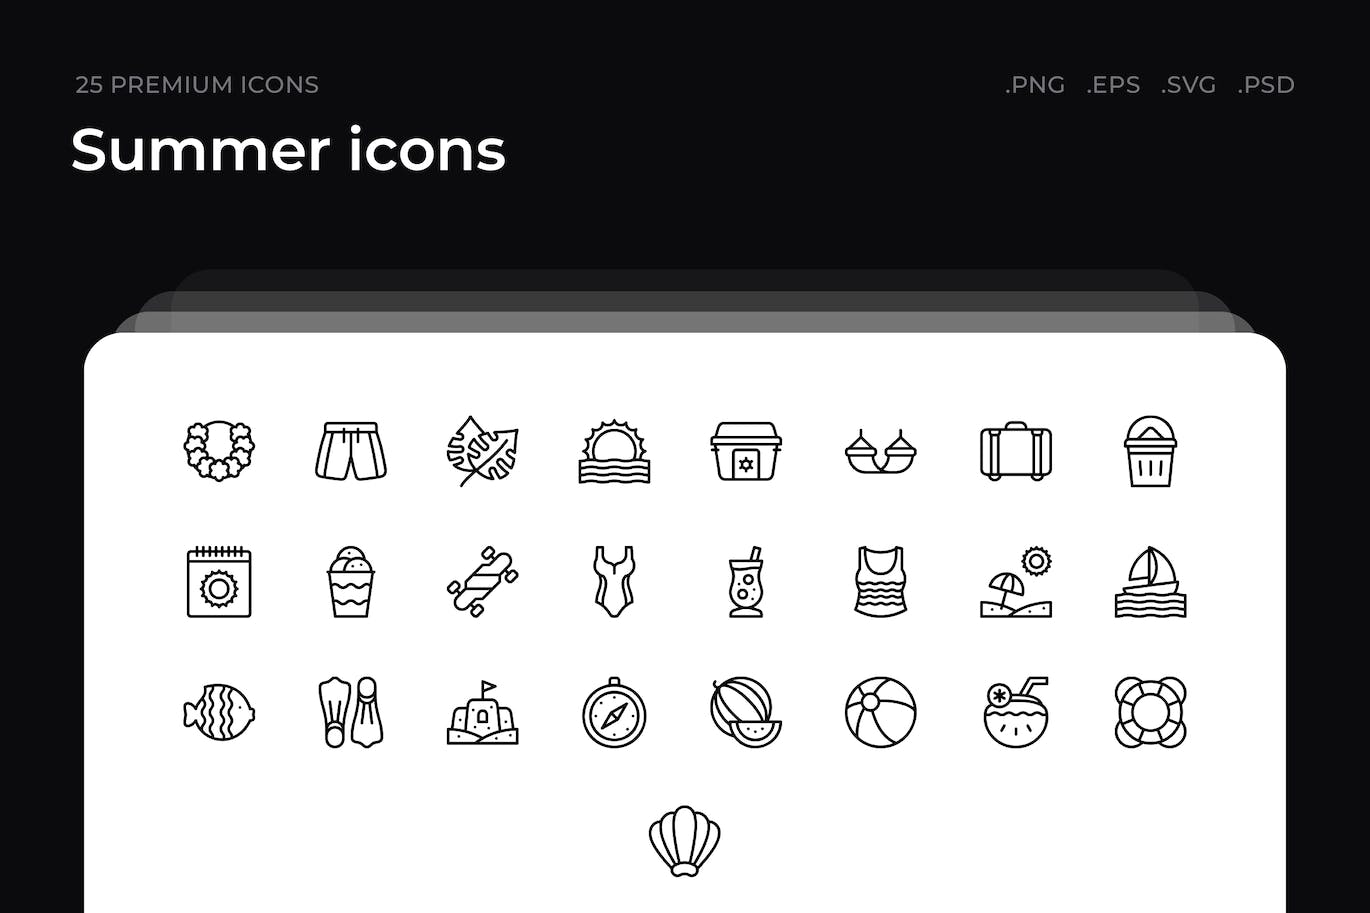 25枚夏天主题简约线条矢量图标 Summer icons 图标素材 第1张